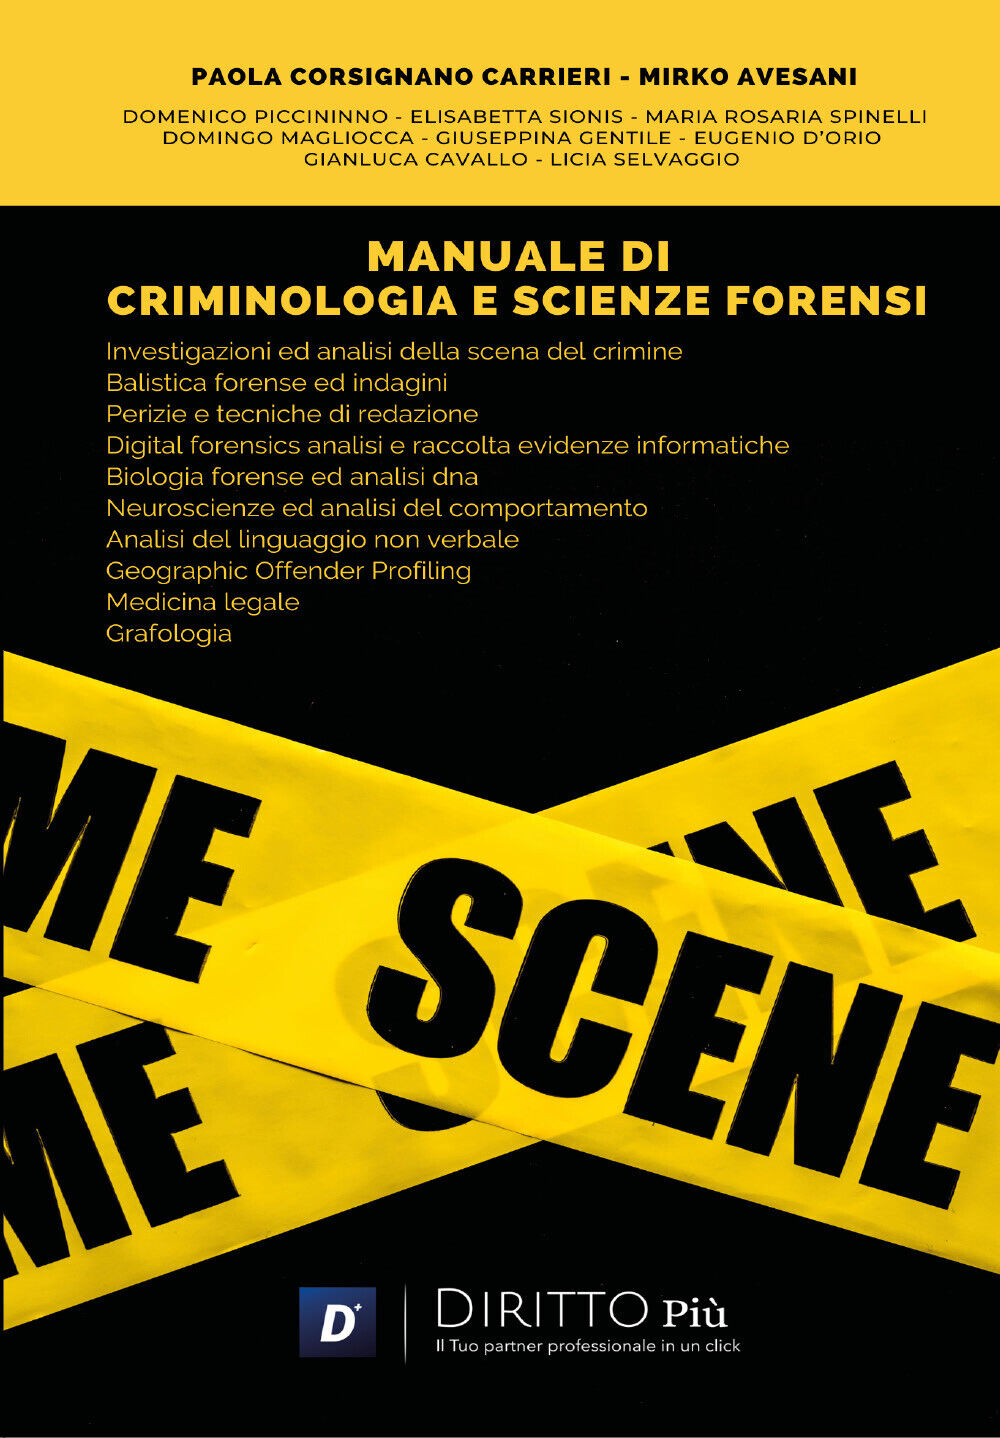 Manuale di Criminologia e Scienze Forensi di Paola Corsignano Carrieri, Mirko Av libro usato